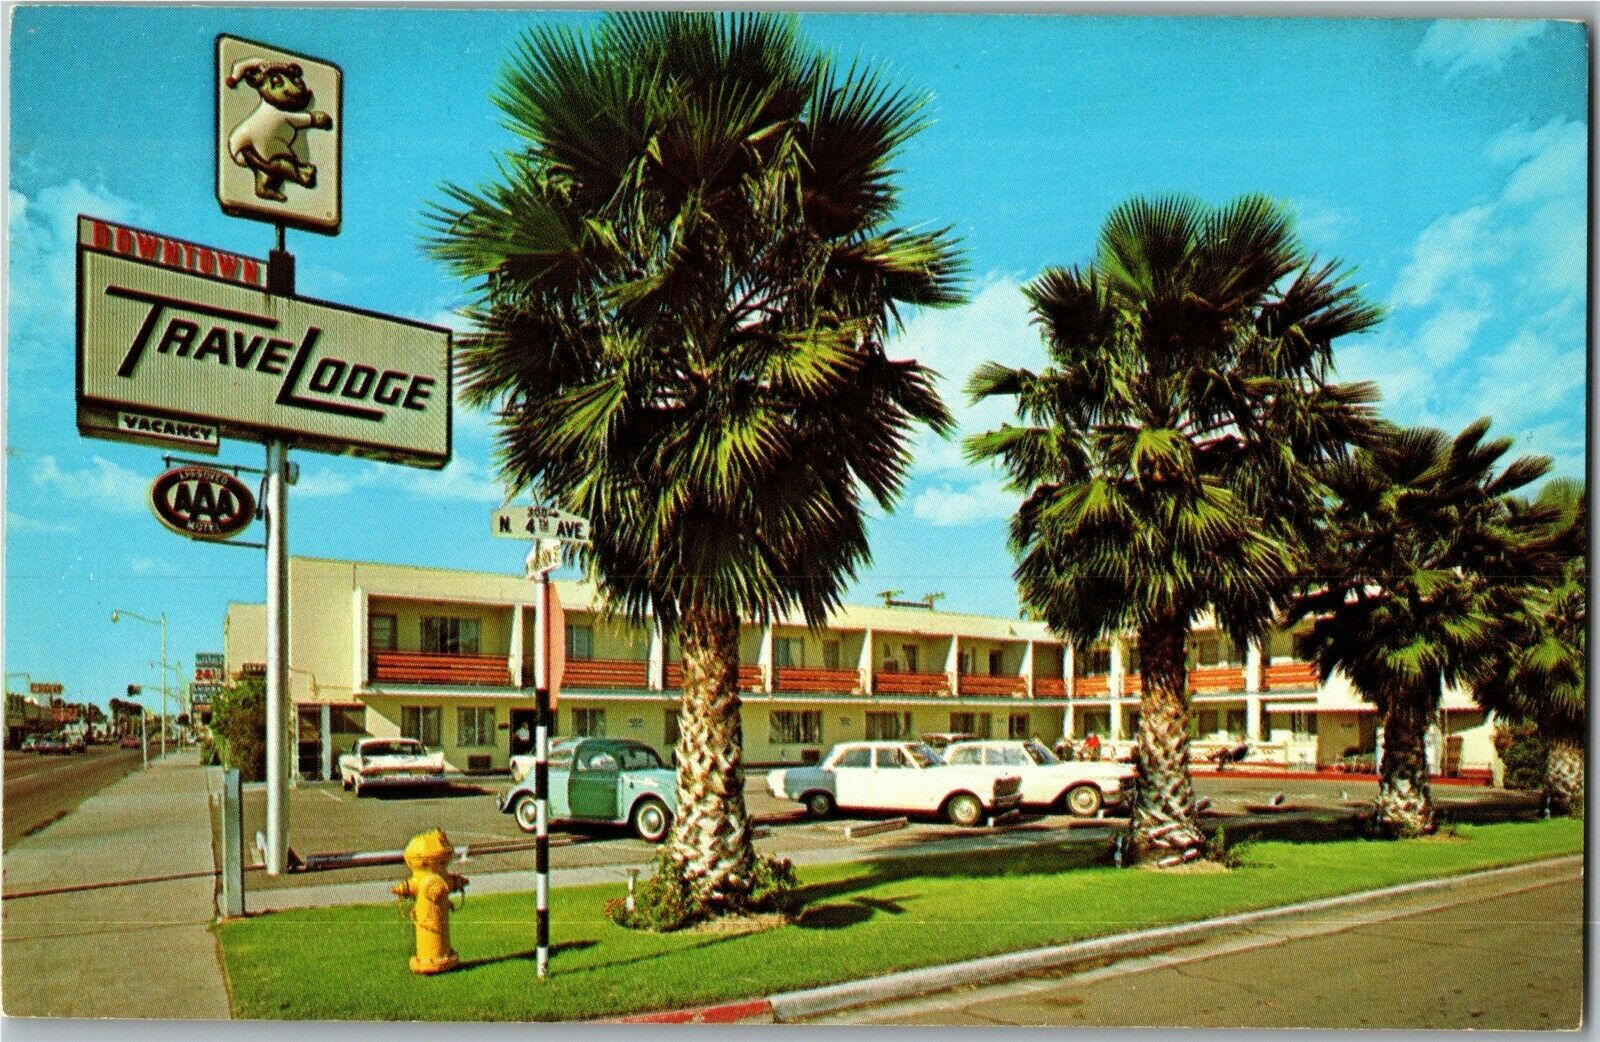 TraveLodge on Van Buren, Downtown Phoenix AZ Vintage Postcard C54